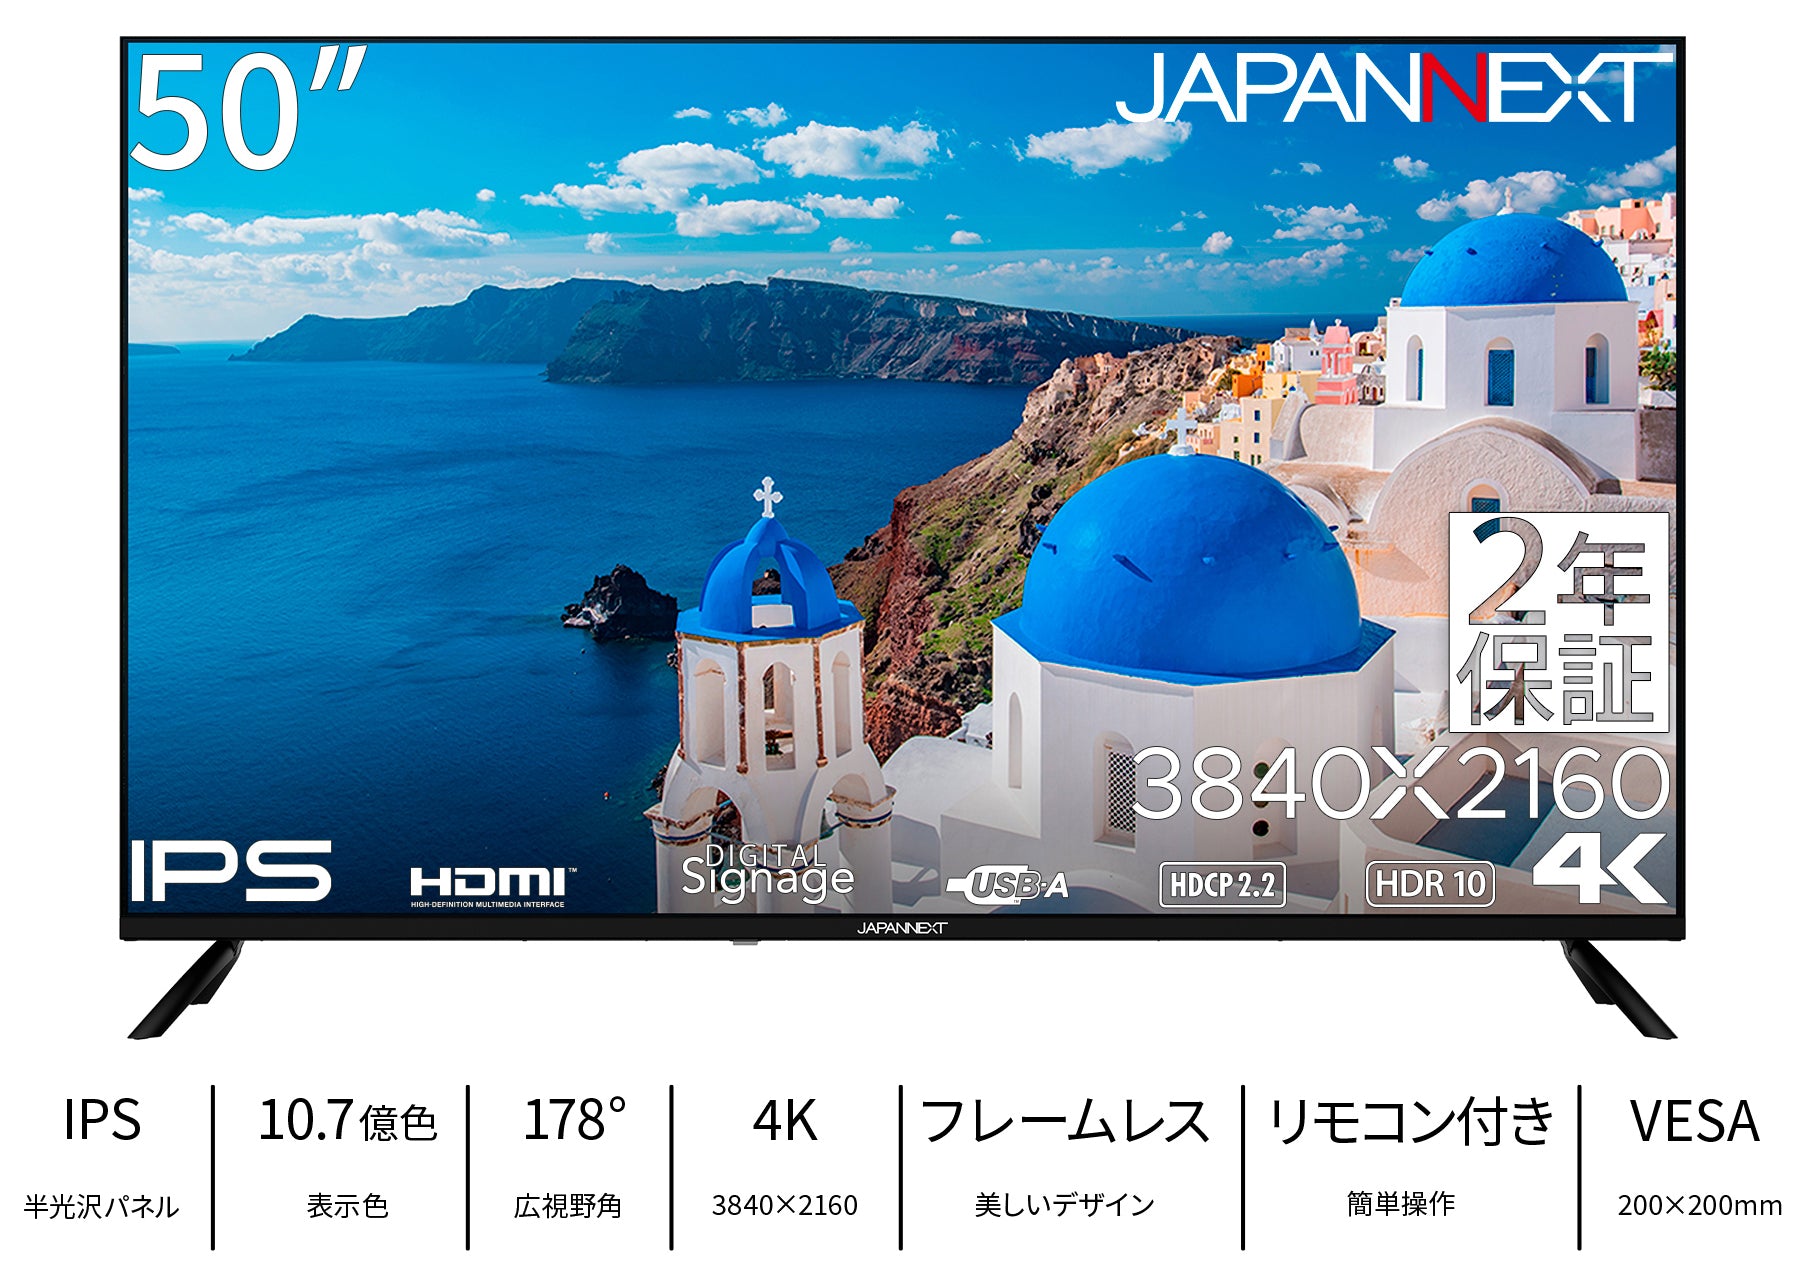 【2年保証モデル】JAPANNEXT 50インチ IPSパネル搭載 大型4K 